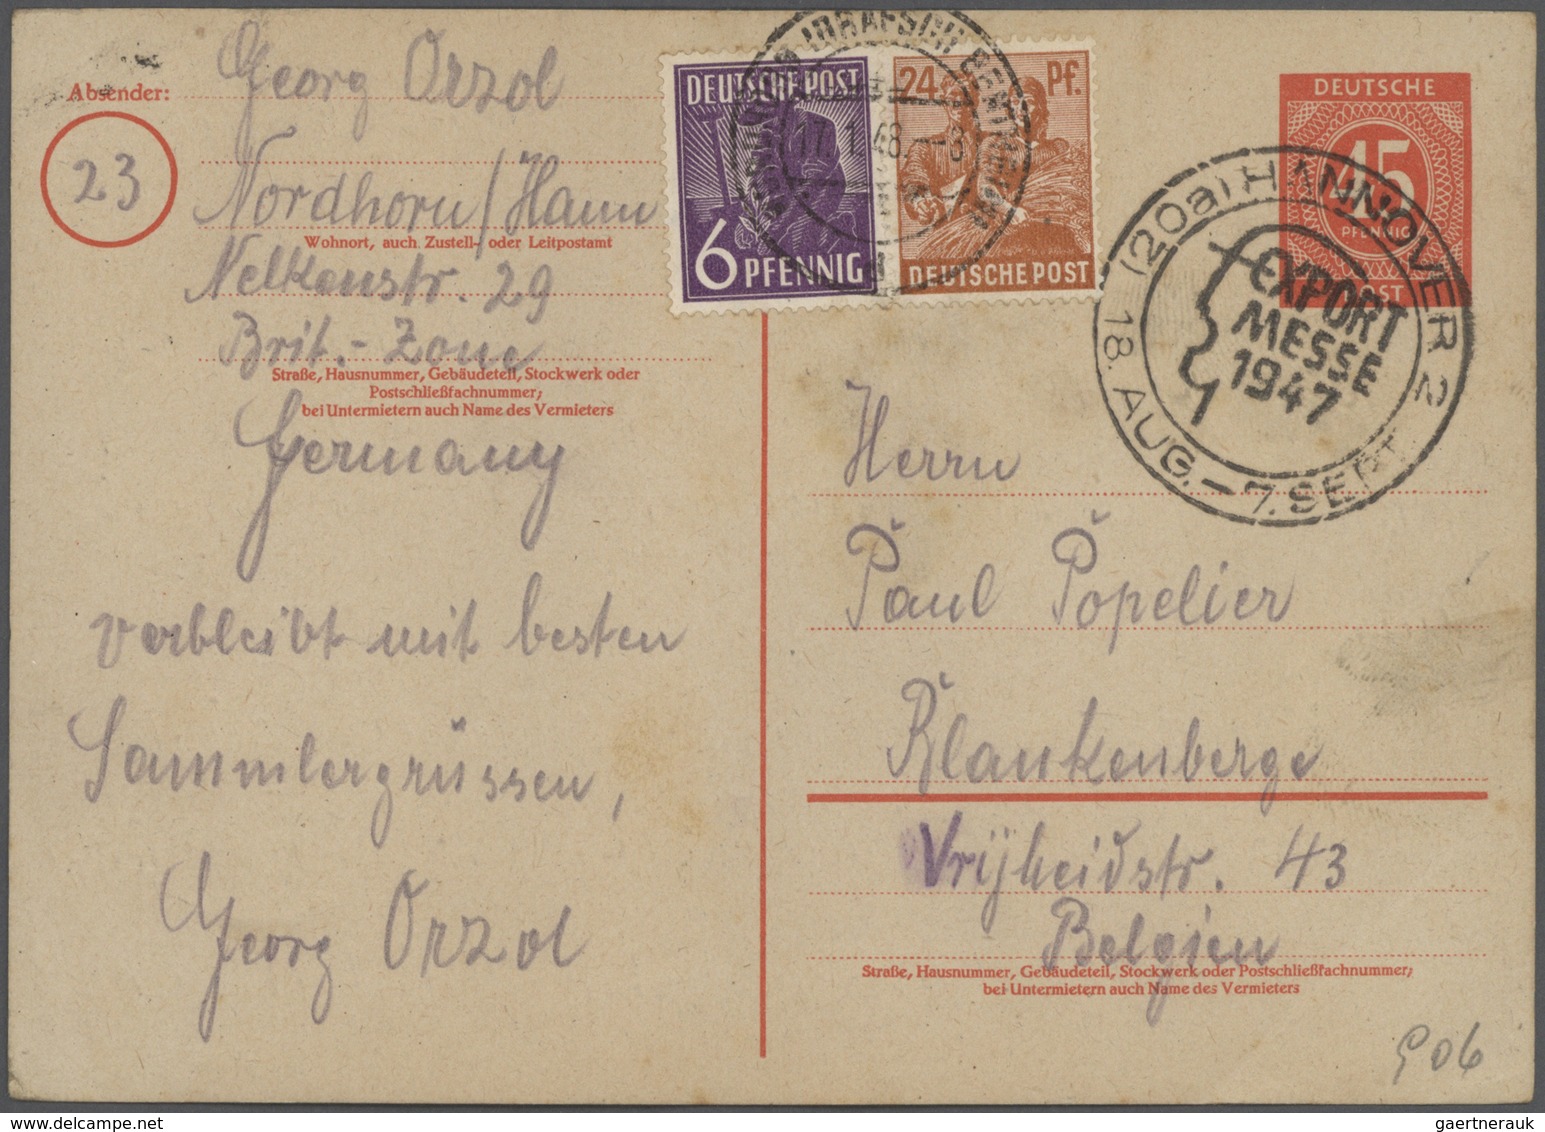 31108 Deutschland - Ganzsachen: 1860-1980, umfangreiche Sammlung quer durch alle Gebiete, dabei zahlreiche